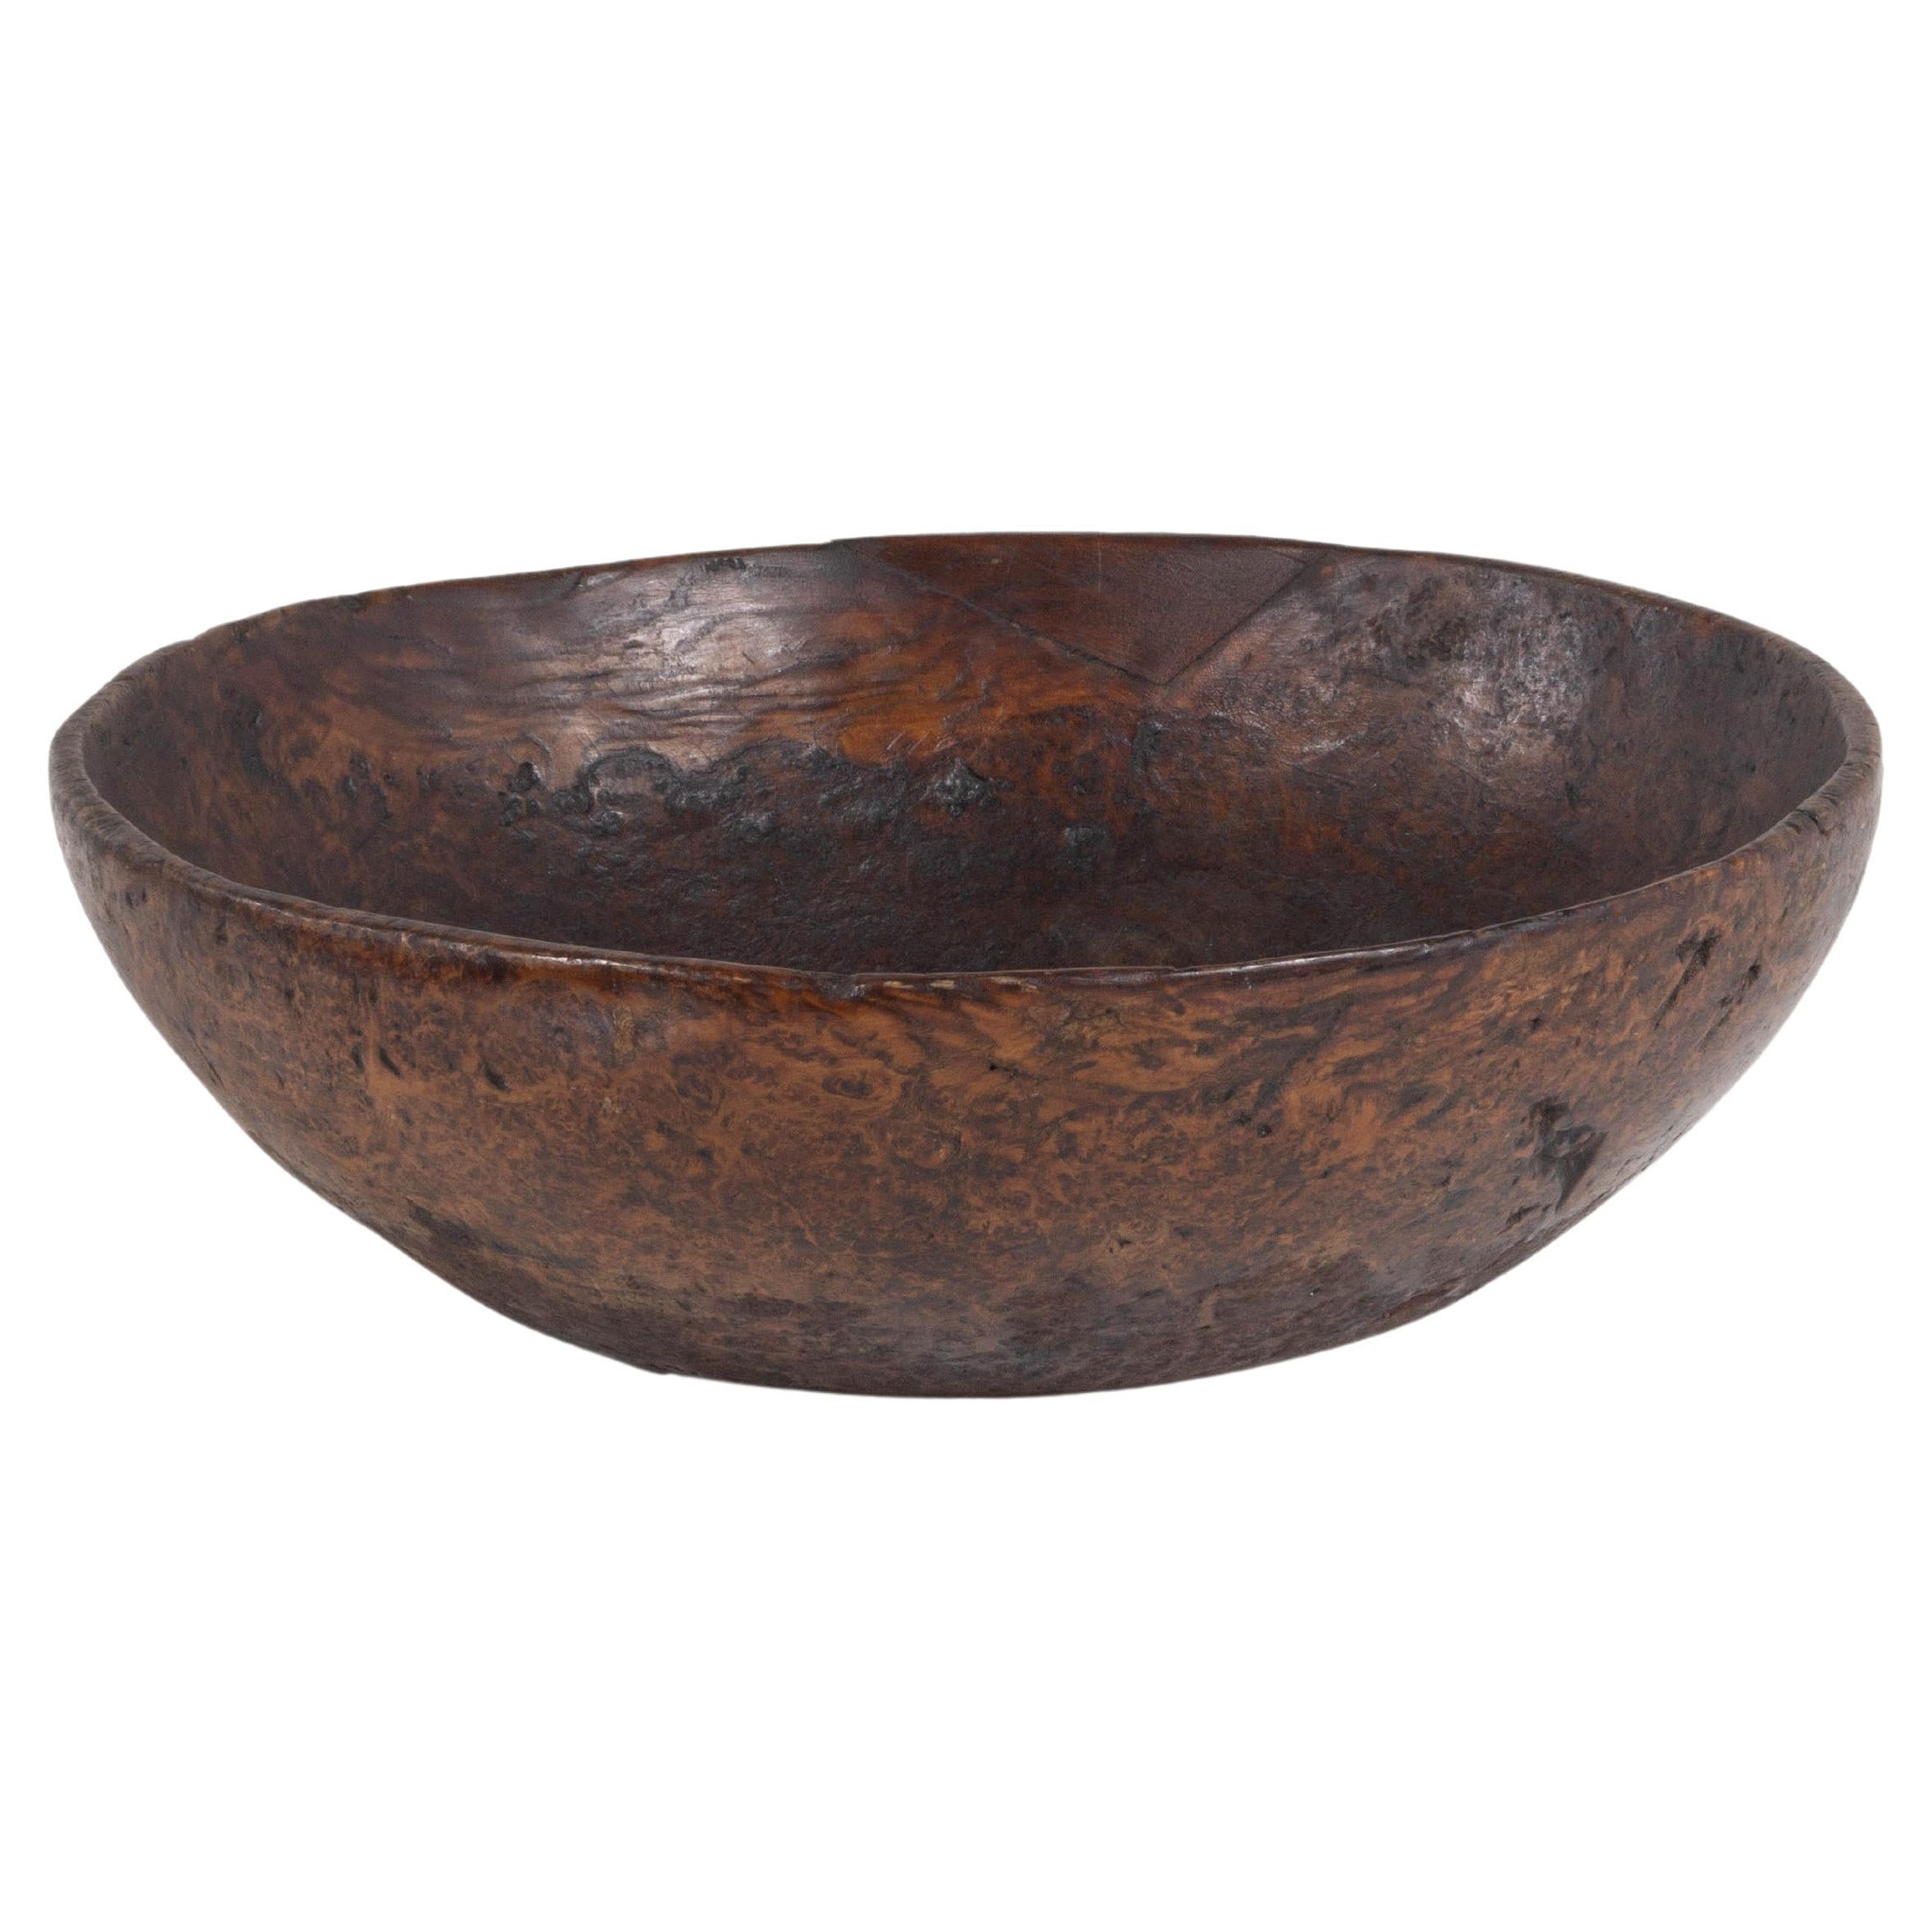 Ancient Carved Ash Burl Wood Bowl with Rim Repair